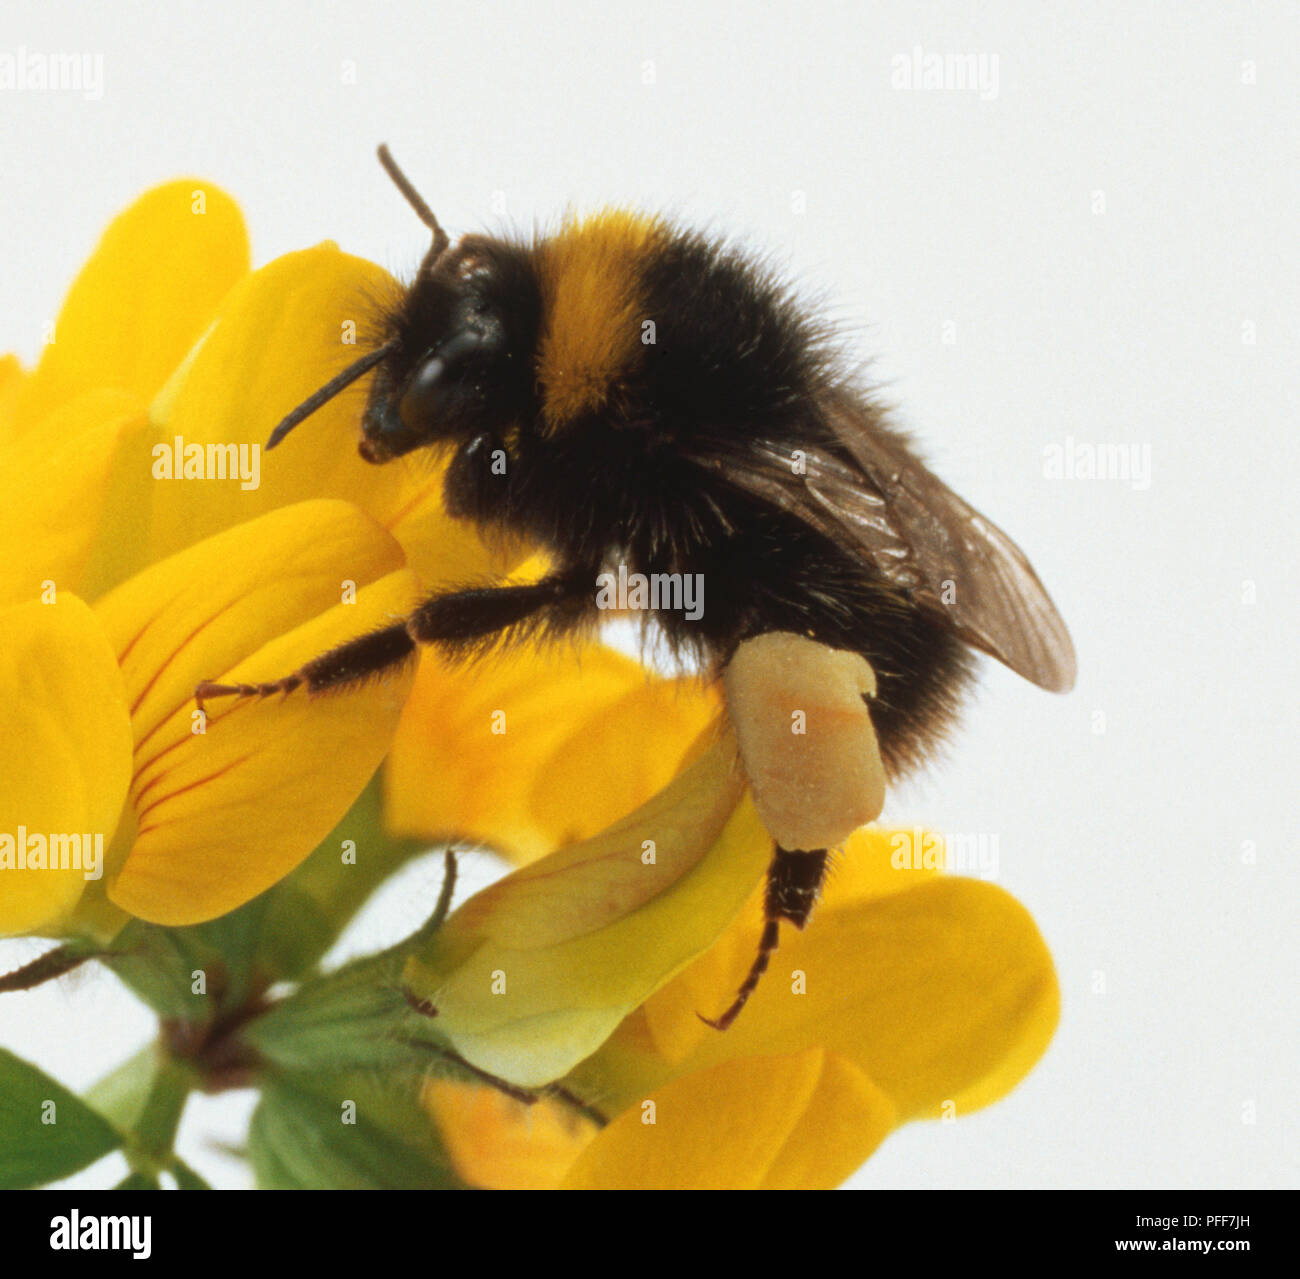 Bombus terrestris, Hummel, schwarzen und gelben Streifen, Pollen Taschen an den Beinen mit Pollen gefüllt, Haken auf Füße greifen Blütenblätter, Flügel gefaltet. Stockfoto